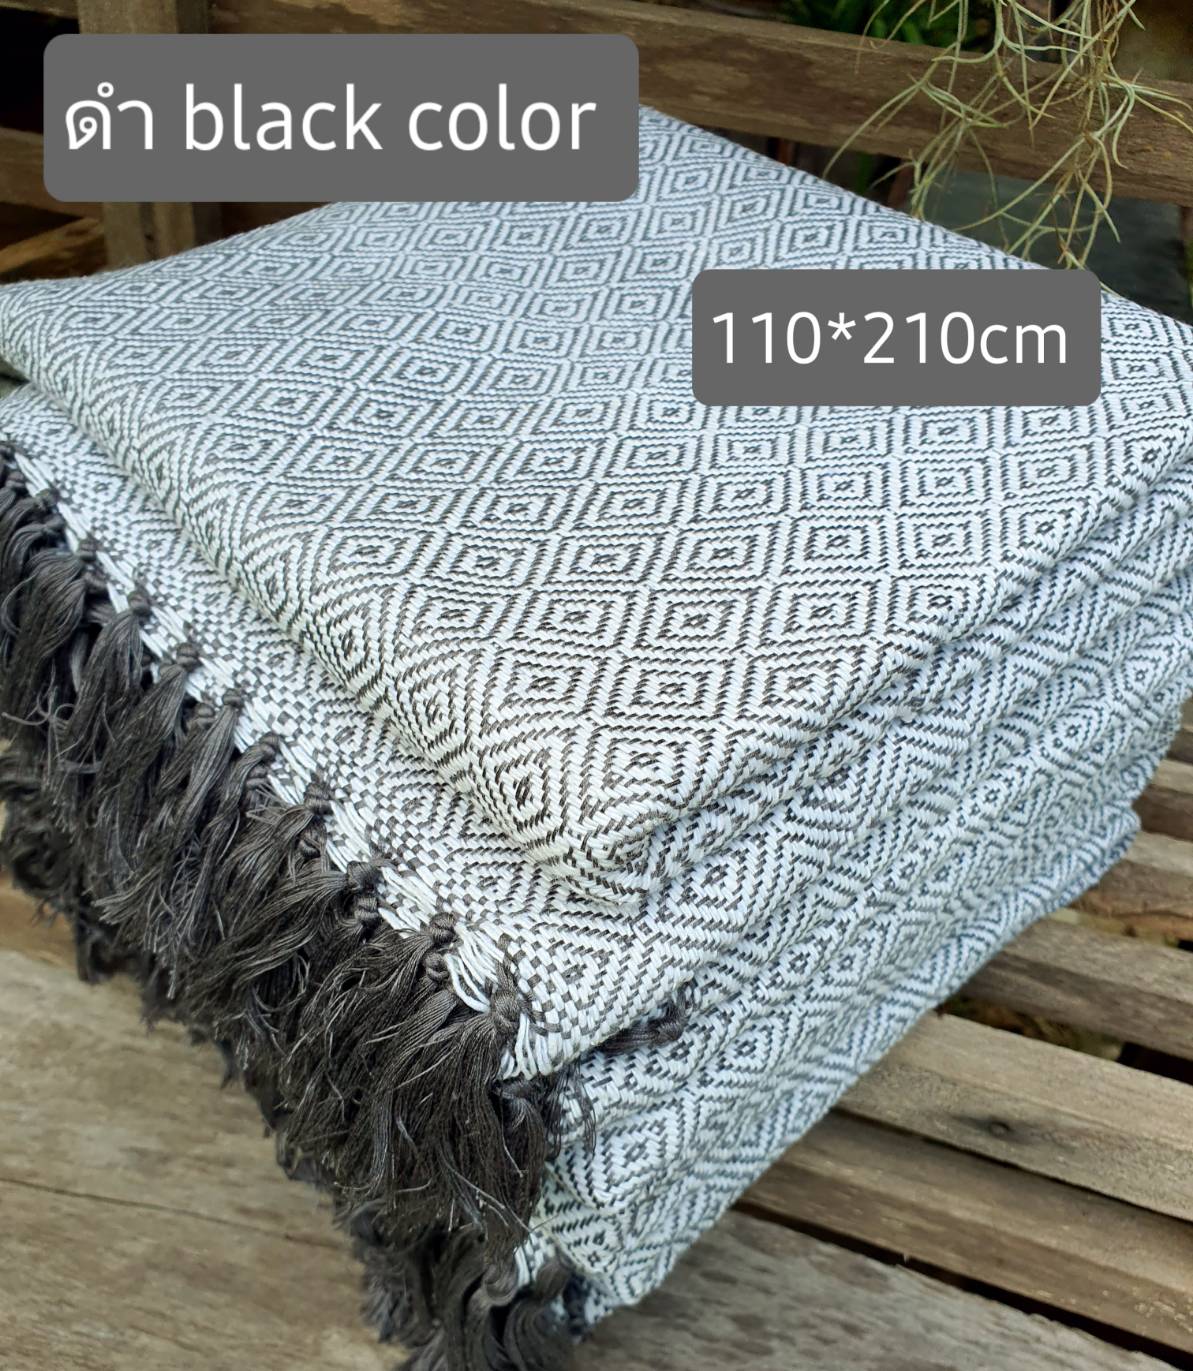 black color   ทอมือแท้  ผ้าห่ม   ผ้าฝ้ายทอมือ  105*220cm.   Hand  woven cotton blanket   ผ้าทอมือแท้    ผ้าห่มผ้าฝ้าย    cotton blanket   ของรับไหว้ ผ้า  ของที่ระลึก